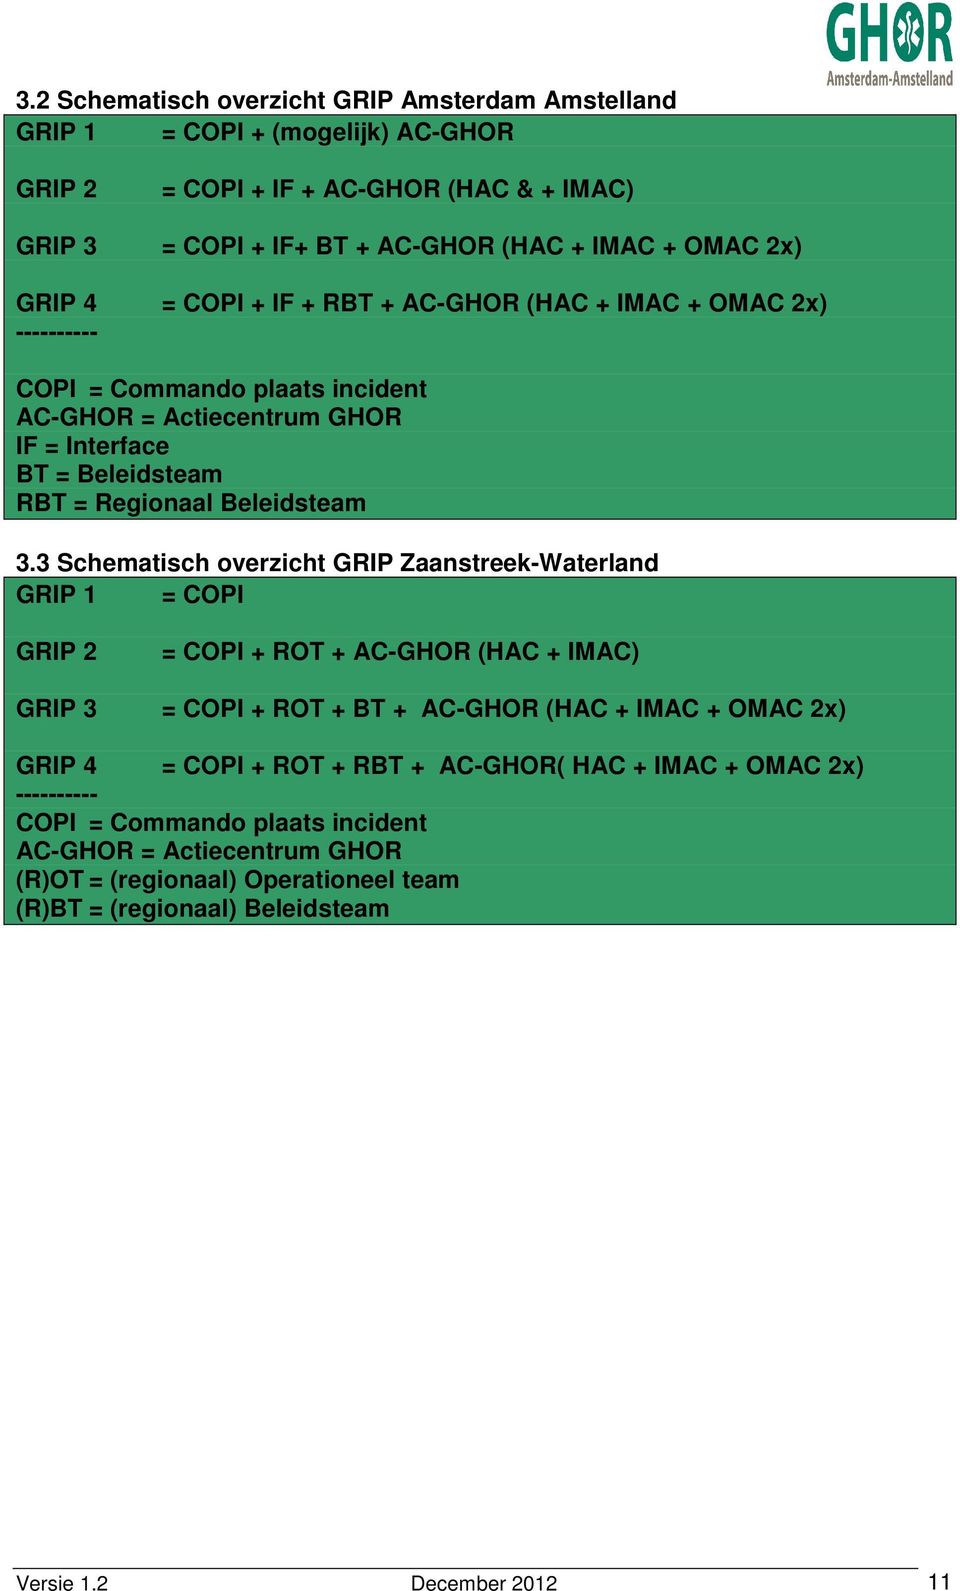 3 Schematisch overzicht GRIP Zaanstreek-Waterland GRIP 1 = COPI GRIP 2 = COPI + ROT + AC-GHOR (HAC + IMAC) GRIP 3 = COPI + ROT + BT + AC-GHOR (HAC + IMAC + OMAC 2x) GRIP 4 = COPI + ROT + RBT +